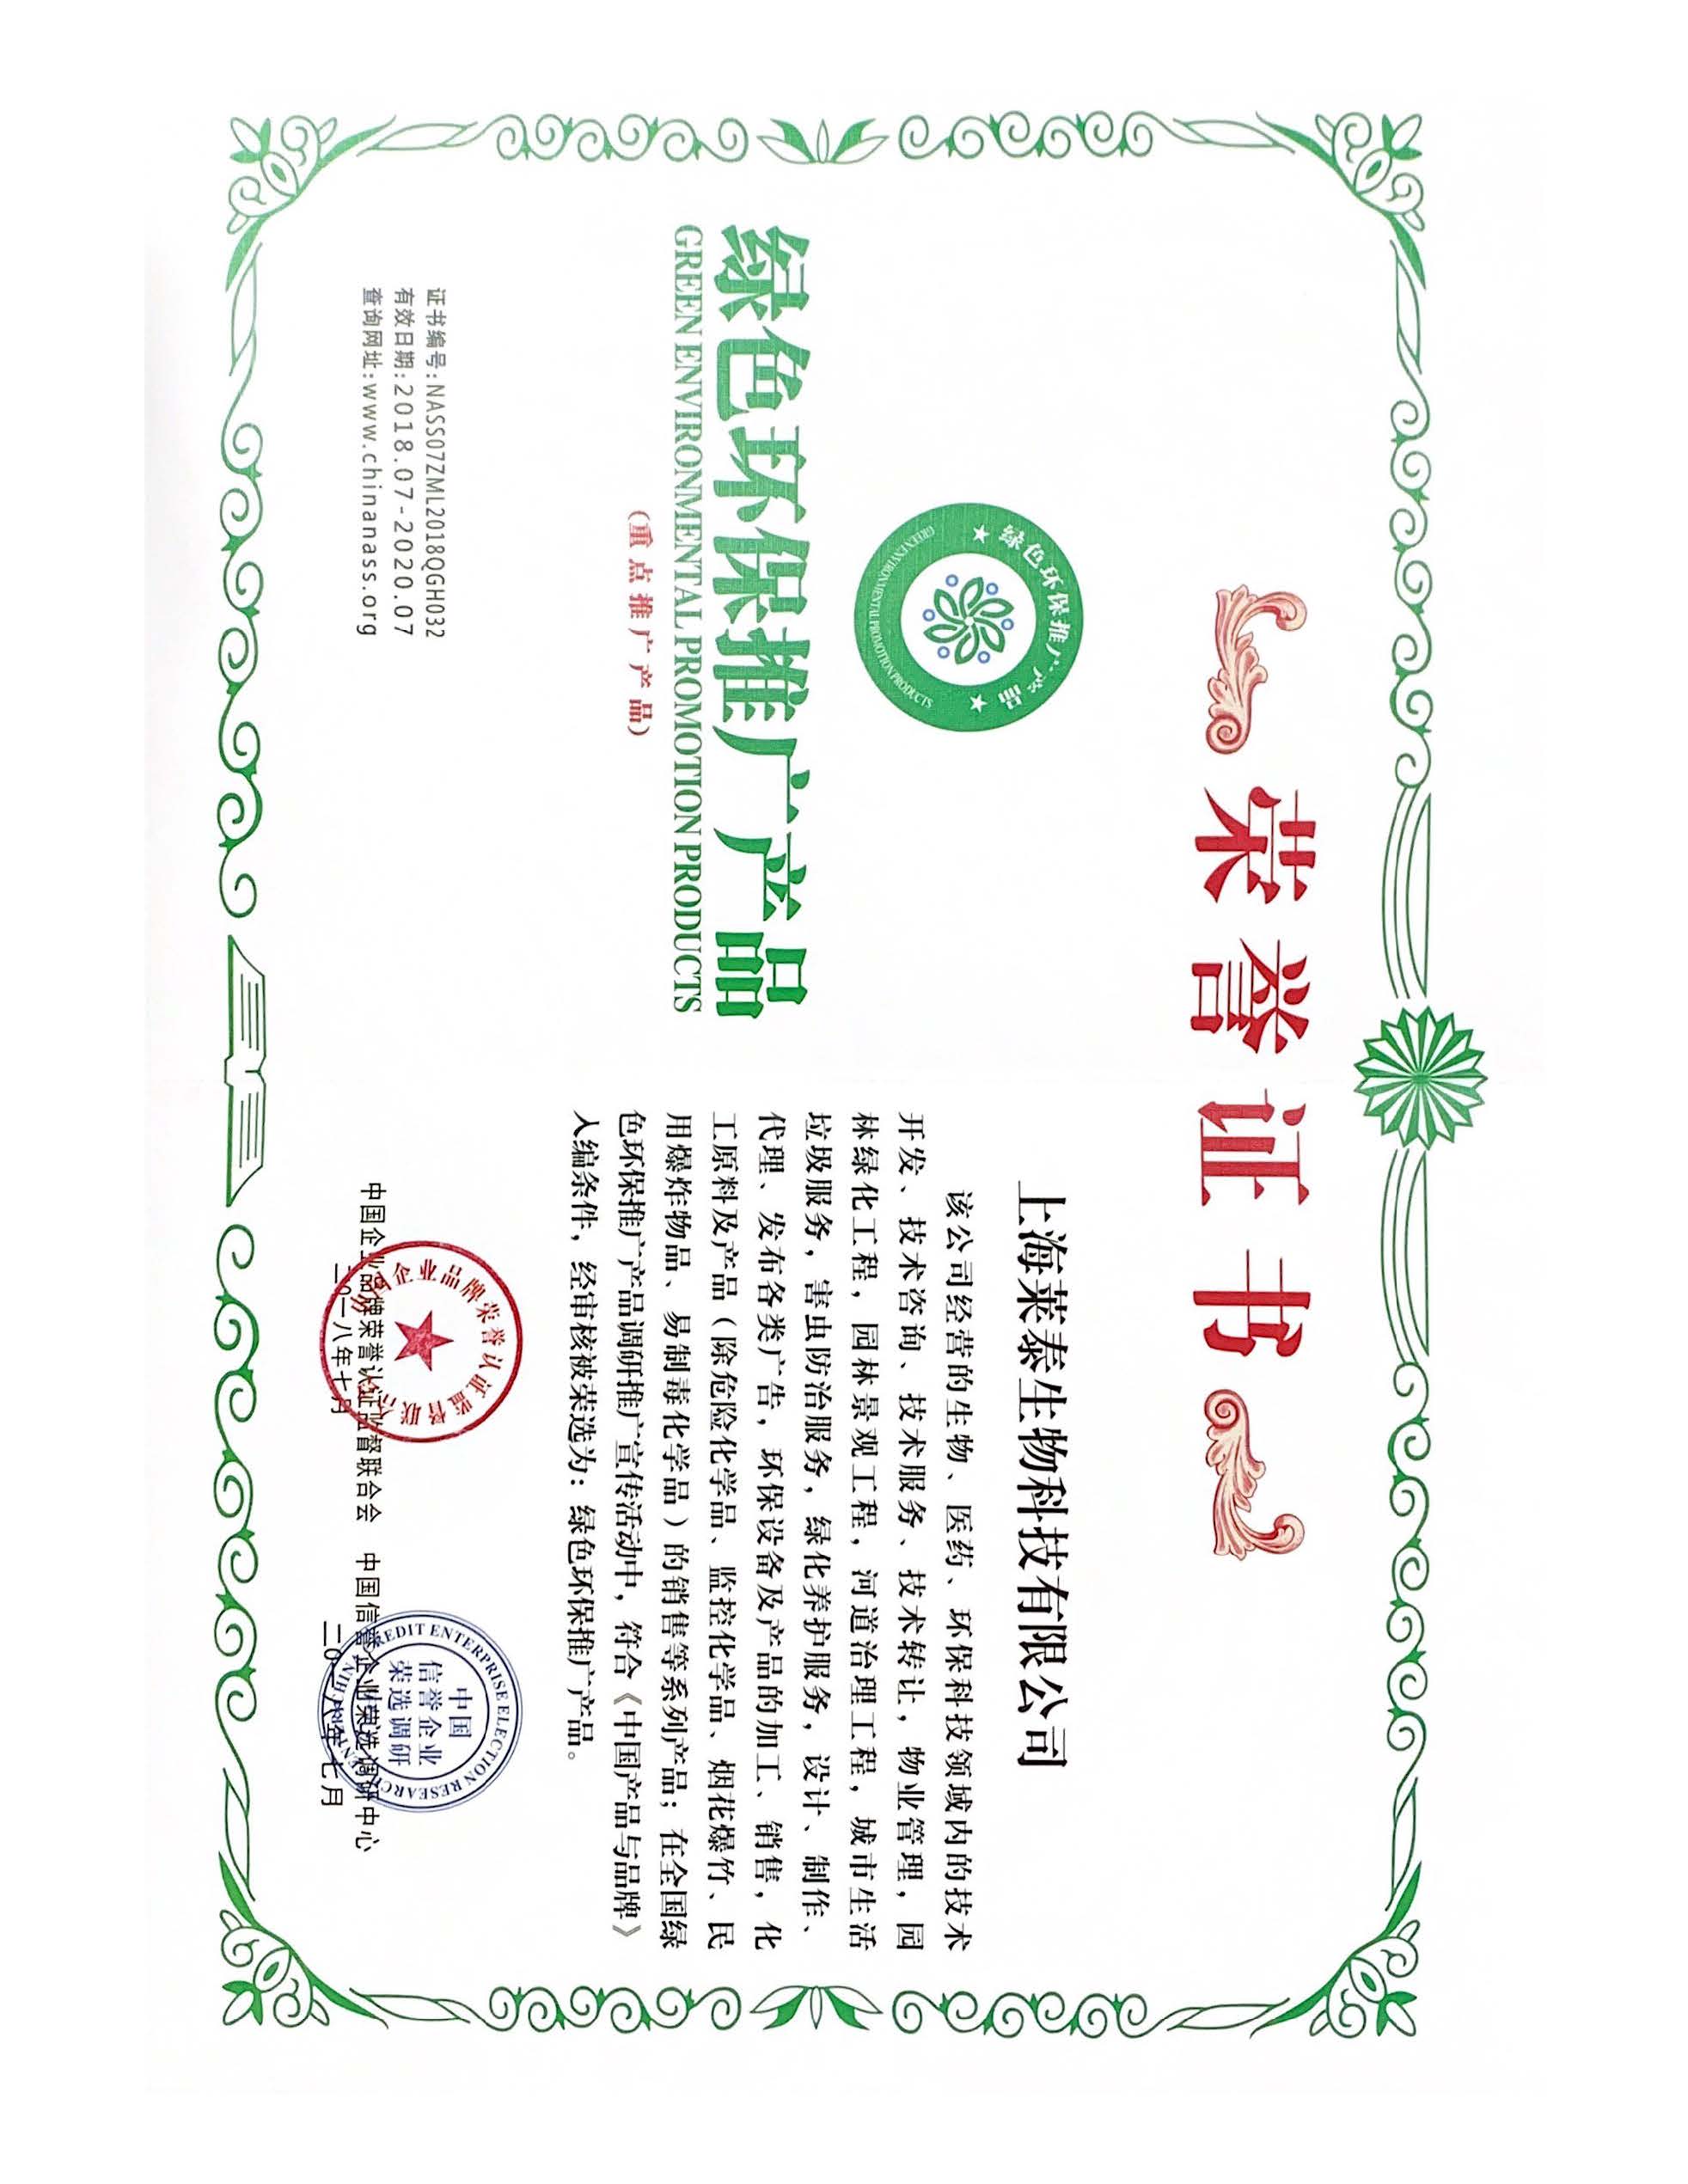 绿色环保推广产品荣誉证书